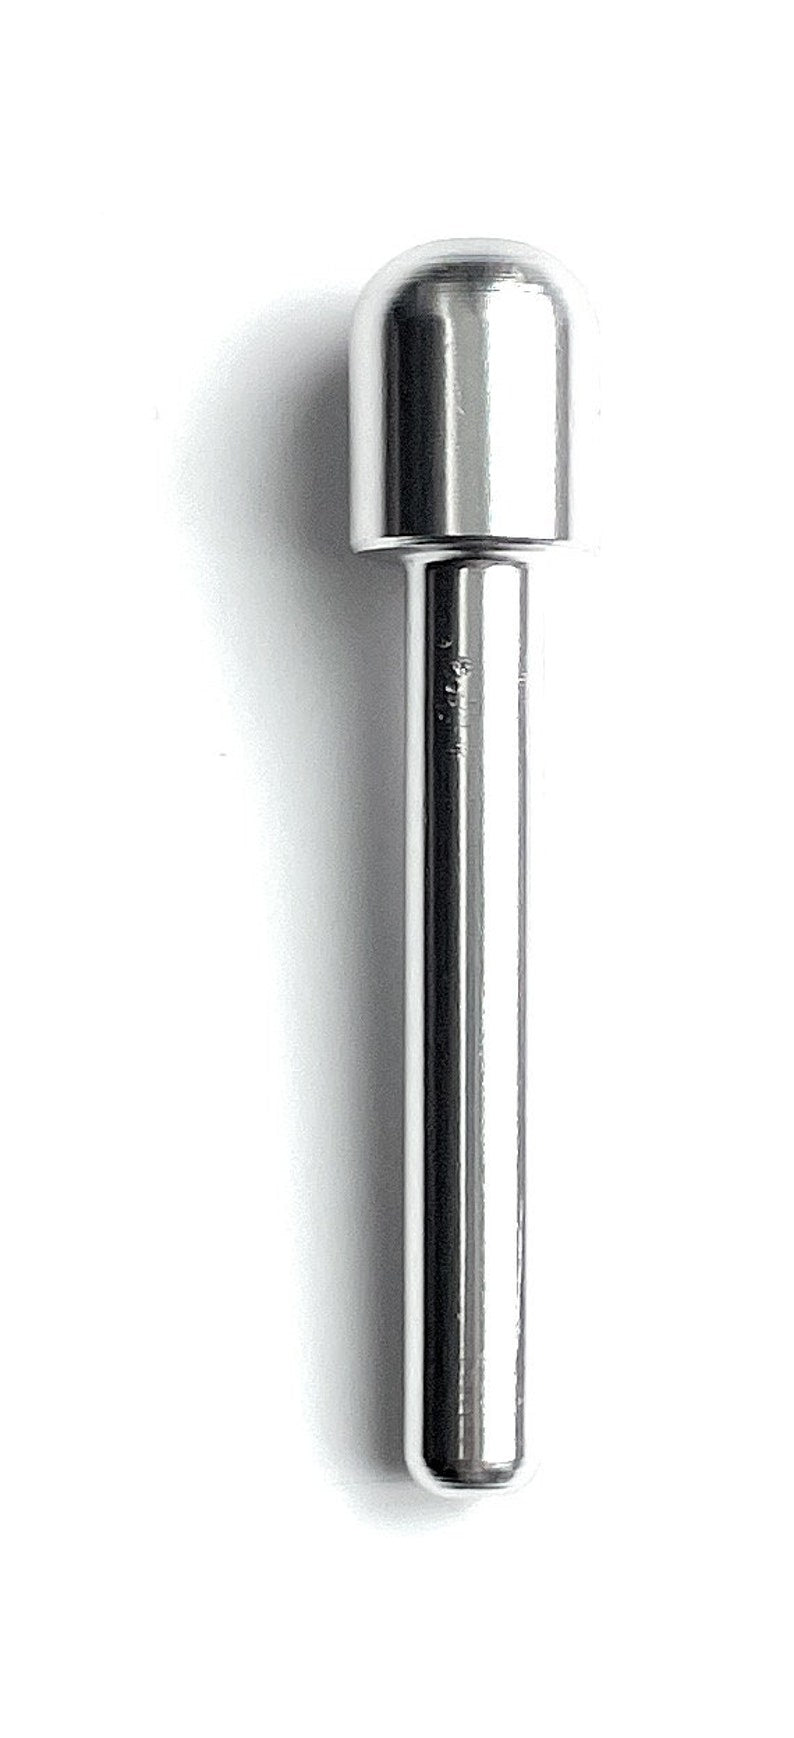 Tube en aluminium - pour votre tube de tirage de tabac à priser - distributeur de tabac à priser - longueur 70 mm (argent)